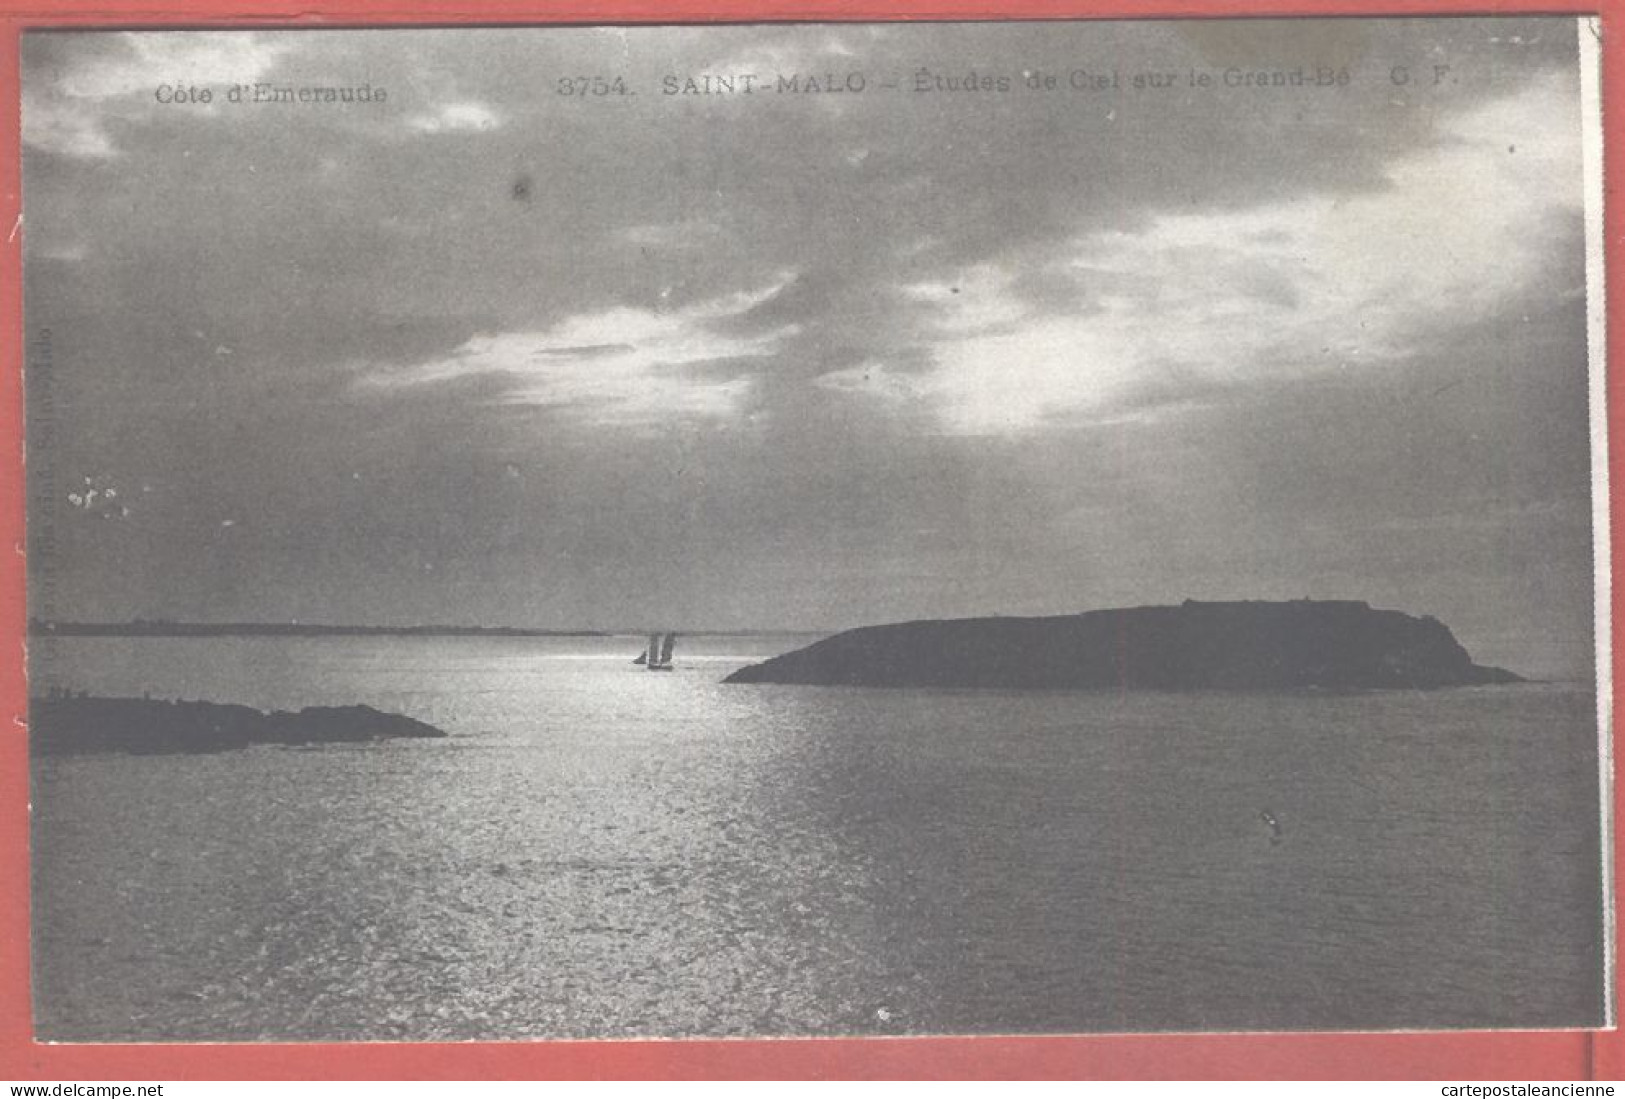 01527 / SAINT-MALO St 35-Ille Et Vilaine Etude Du Ciel Couchant Sur Le GRAND-BE 1910s GERMAIN 3754 - Saint Malo